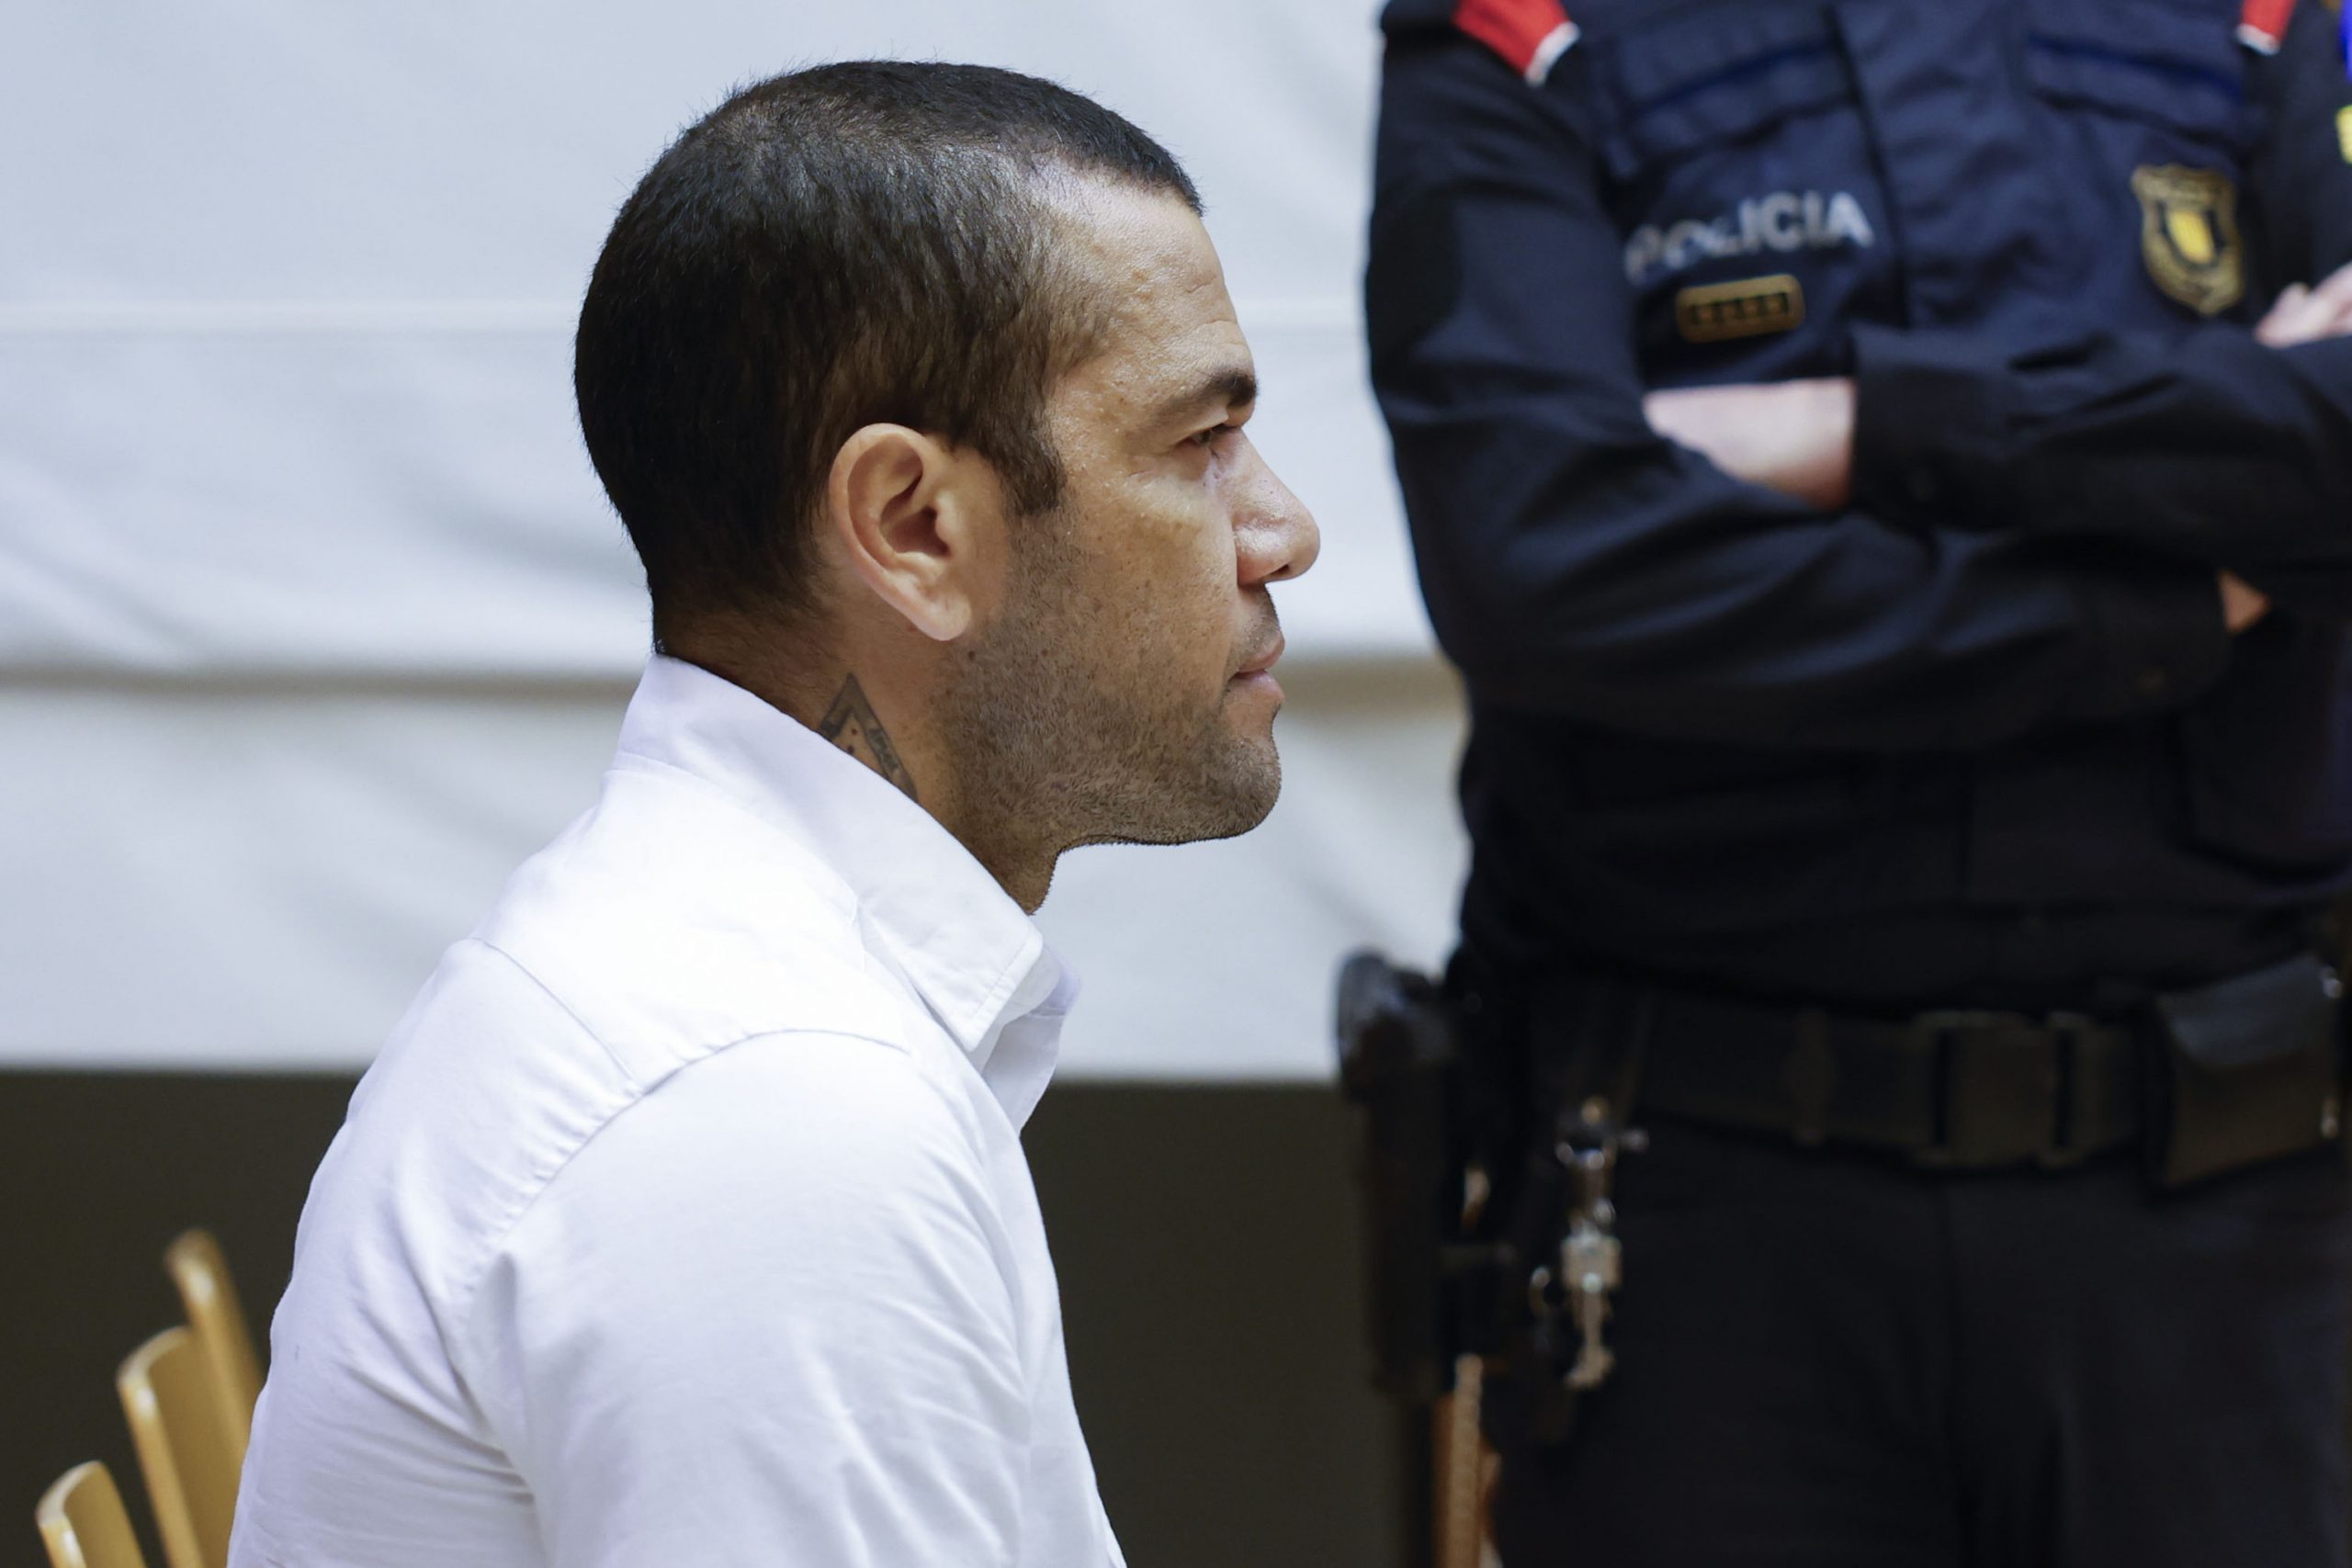 Για βιασμό γυναίκας σε κλαμπ καταδικάστηκε ο πρώην ποδοσφαιριστής της Μπαρτσελόνα, Ντάνι Άλβες